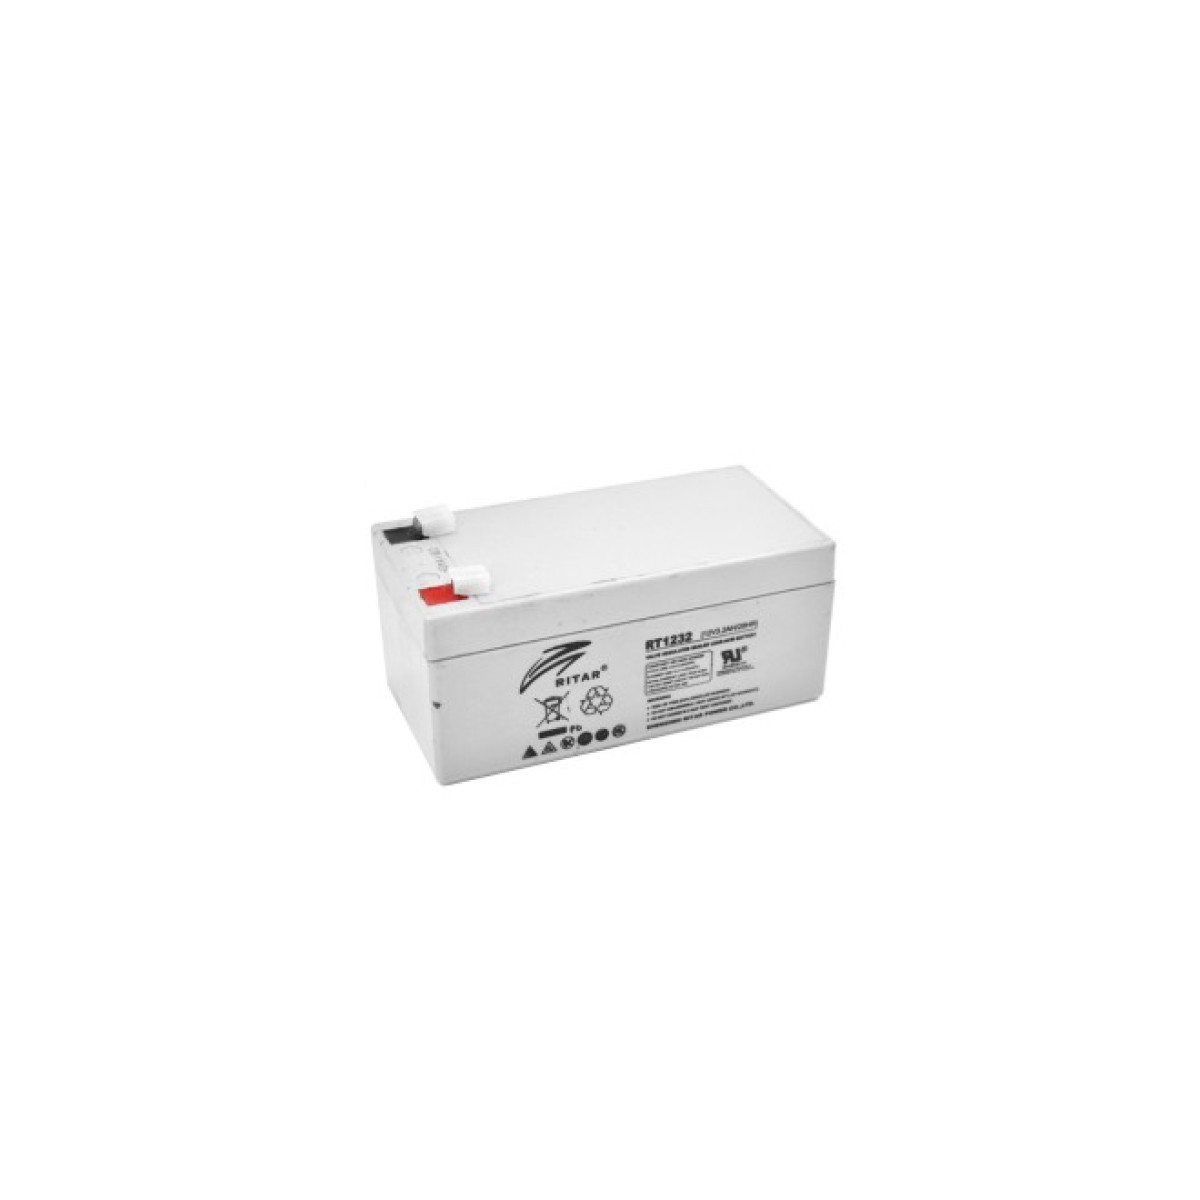 Батарея к ИБП Ritar AGM RT1232, 12V-3.2Ah (RT1232) 256_256.jpg